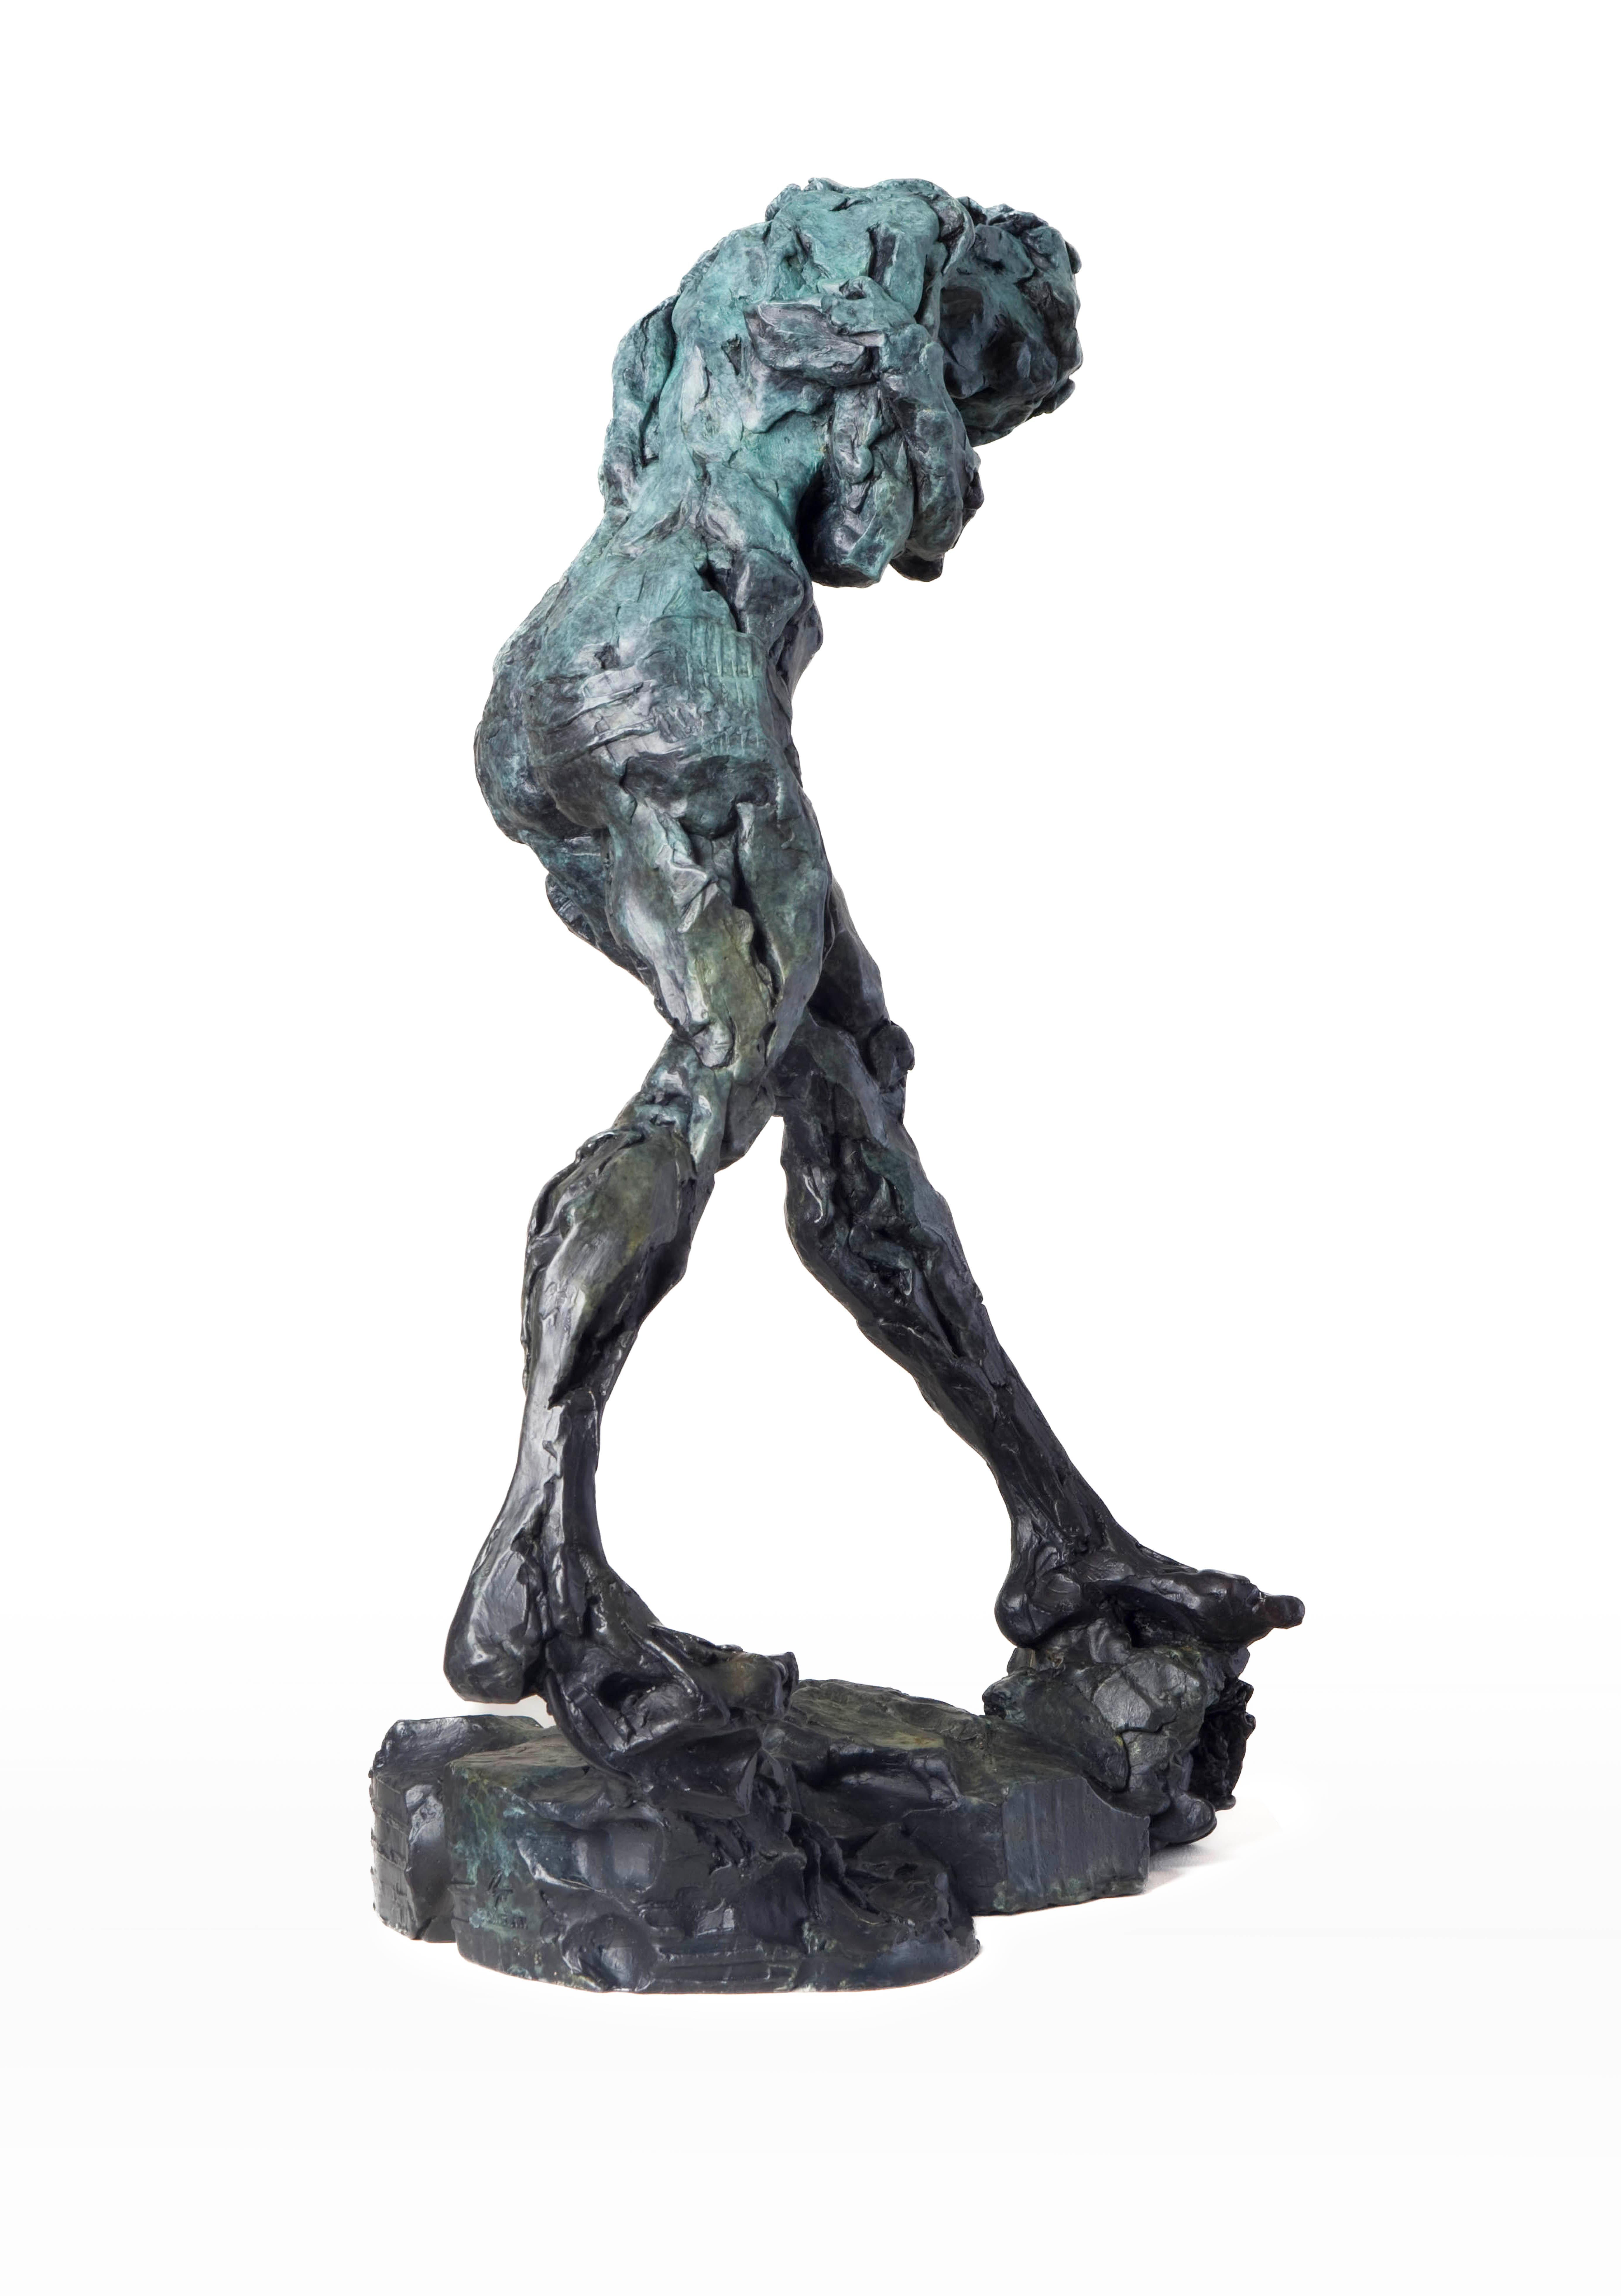 Geist der Schwerkraft  - Emotiv, nackt, weiblich, figurativ, Bronzestatuette – Sculpture von Richard Tosczak